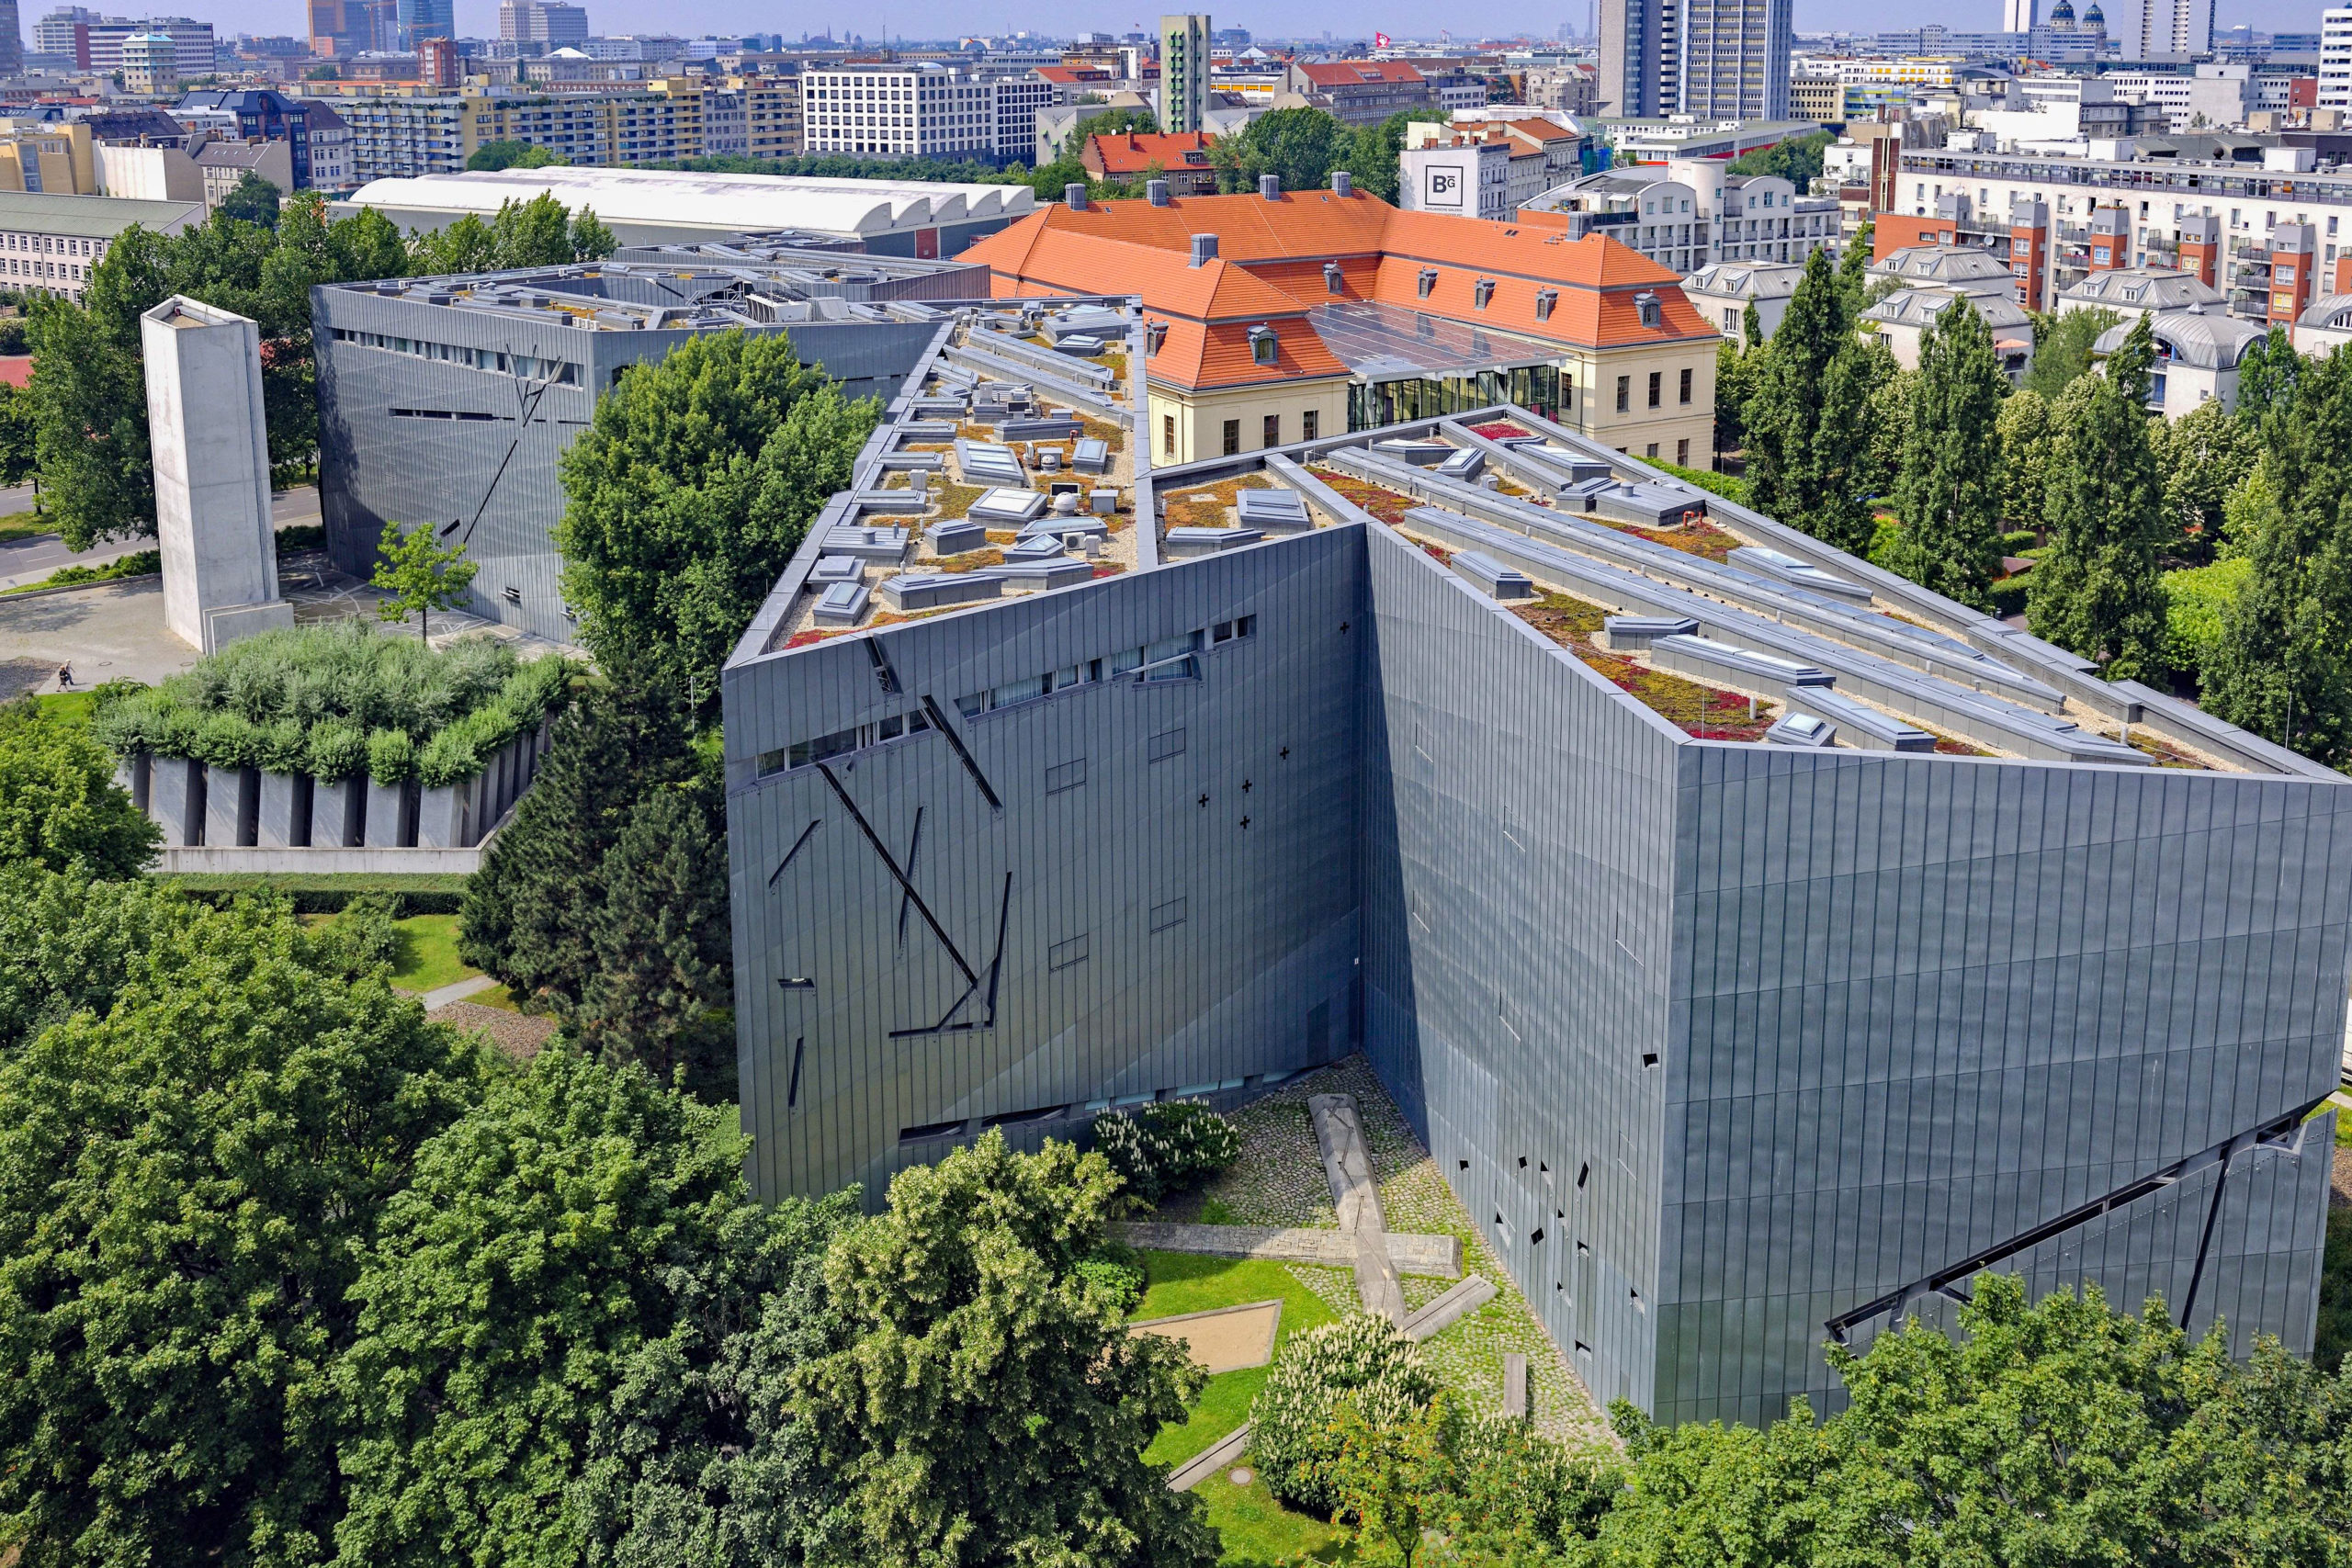 Daniel Libeskind entwarf das zickzackförmige Gebäude, dessen Fassade mit Titanzink verkleidet ist, als Teil des Jüdischen Museums Berlin. Foto: Imago/Blickwinkel